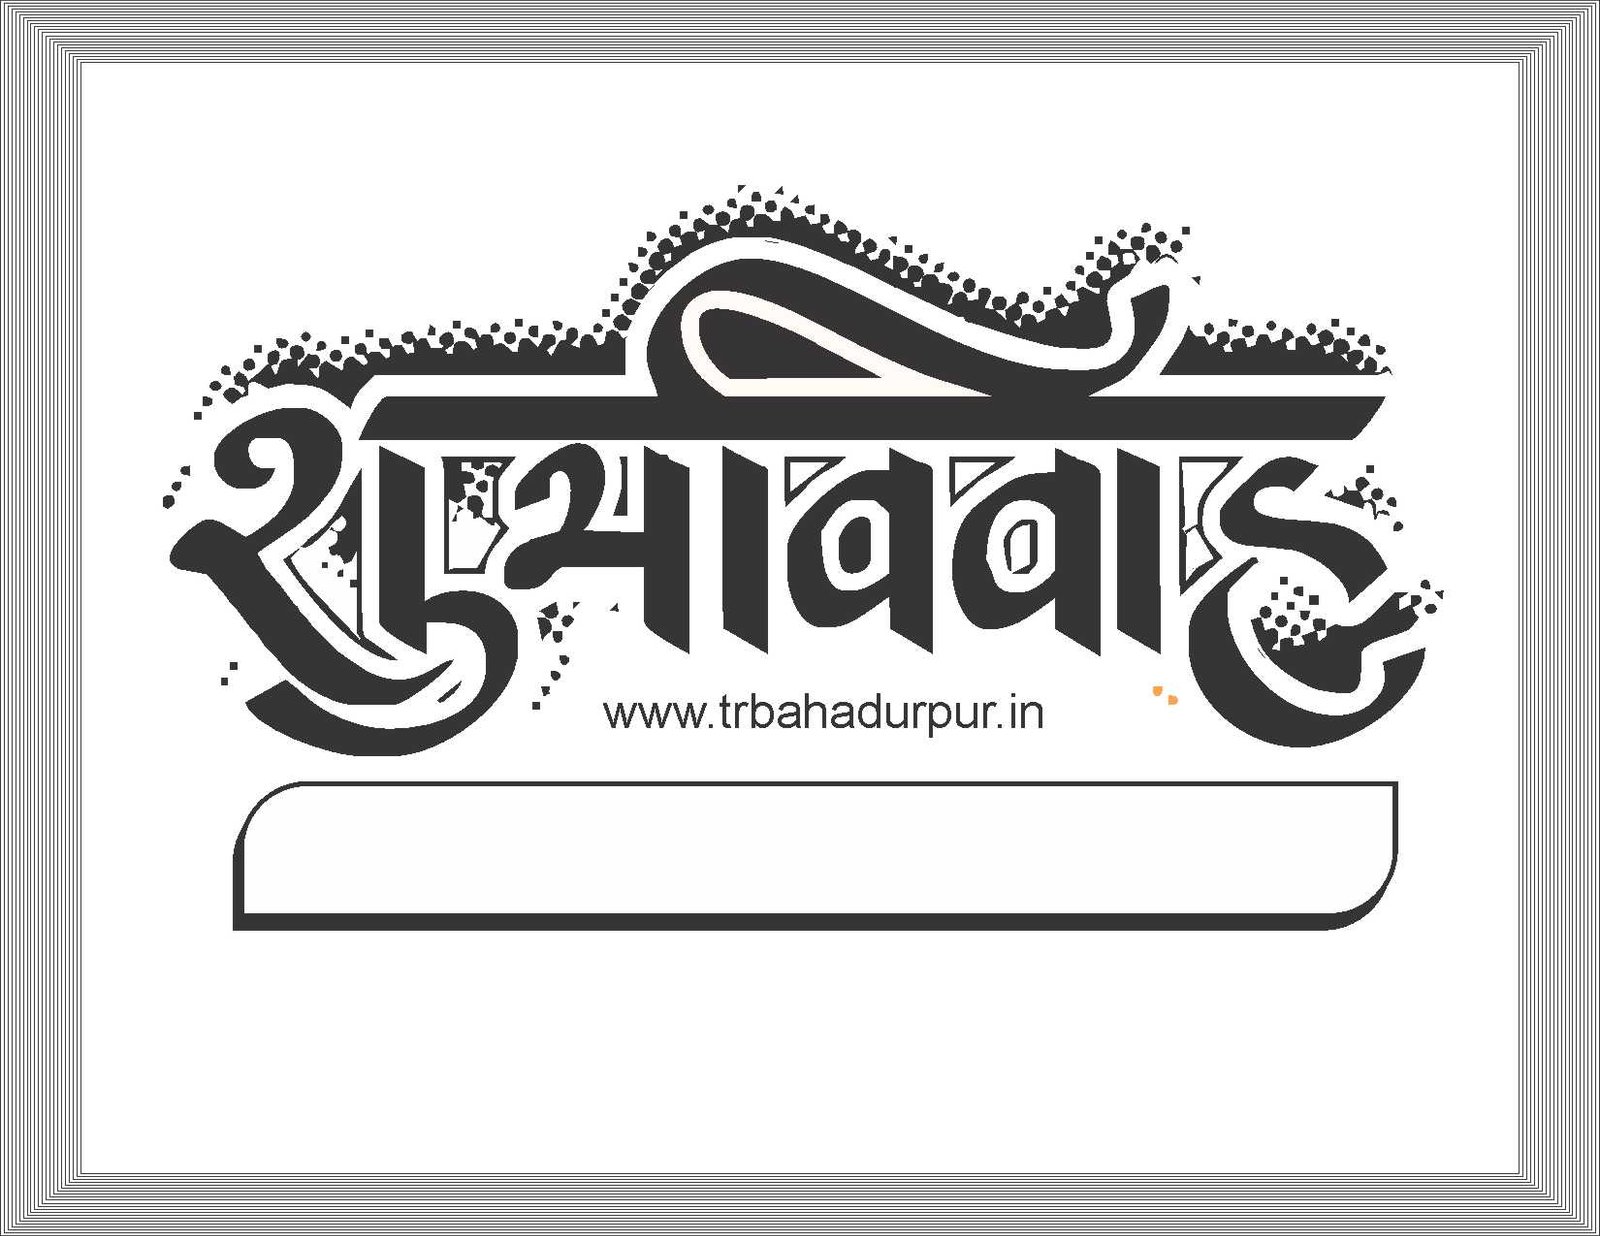 Subh Vivah Logos Hd Free Download Download Free Hd Subh Vivah Logos